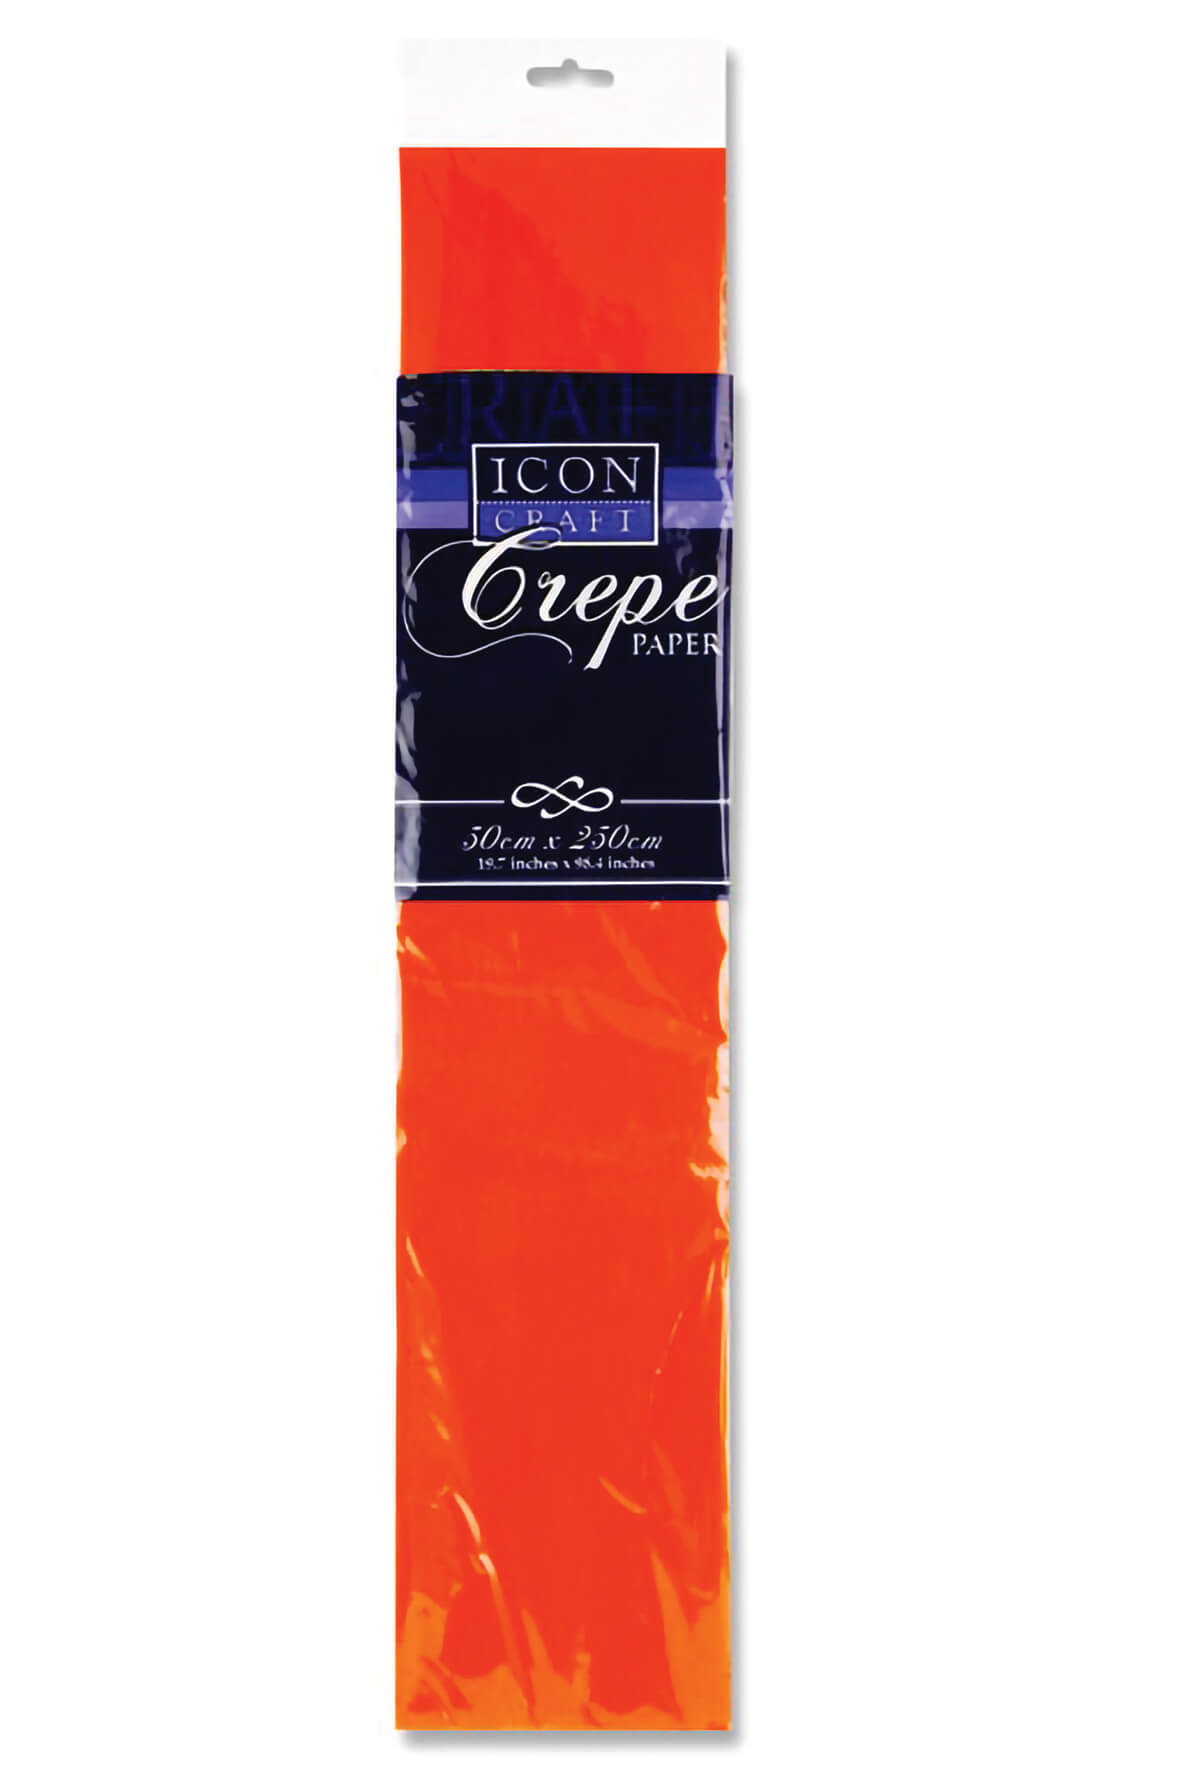 Crepe Paper Orange 500mm x 2.5m 17gsm